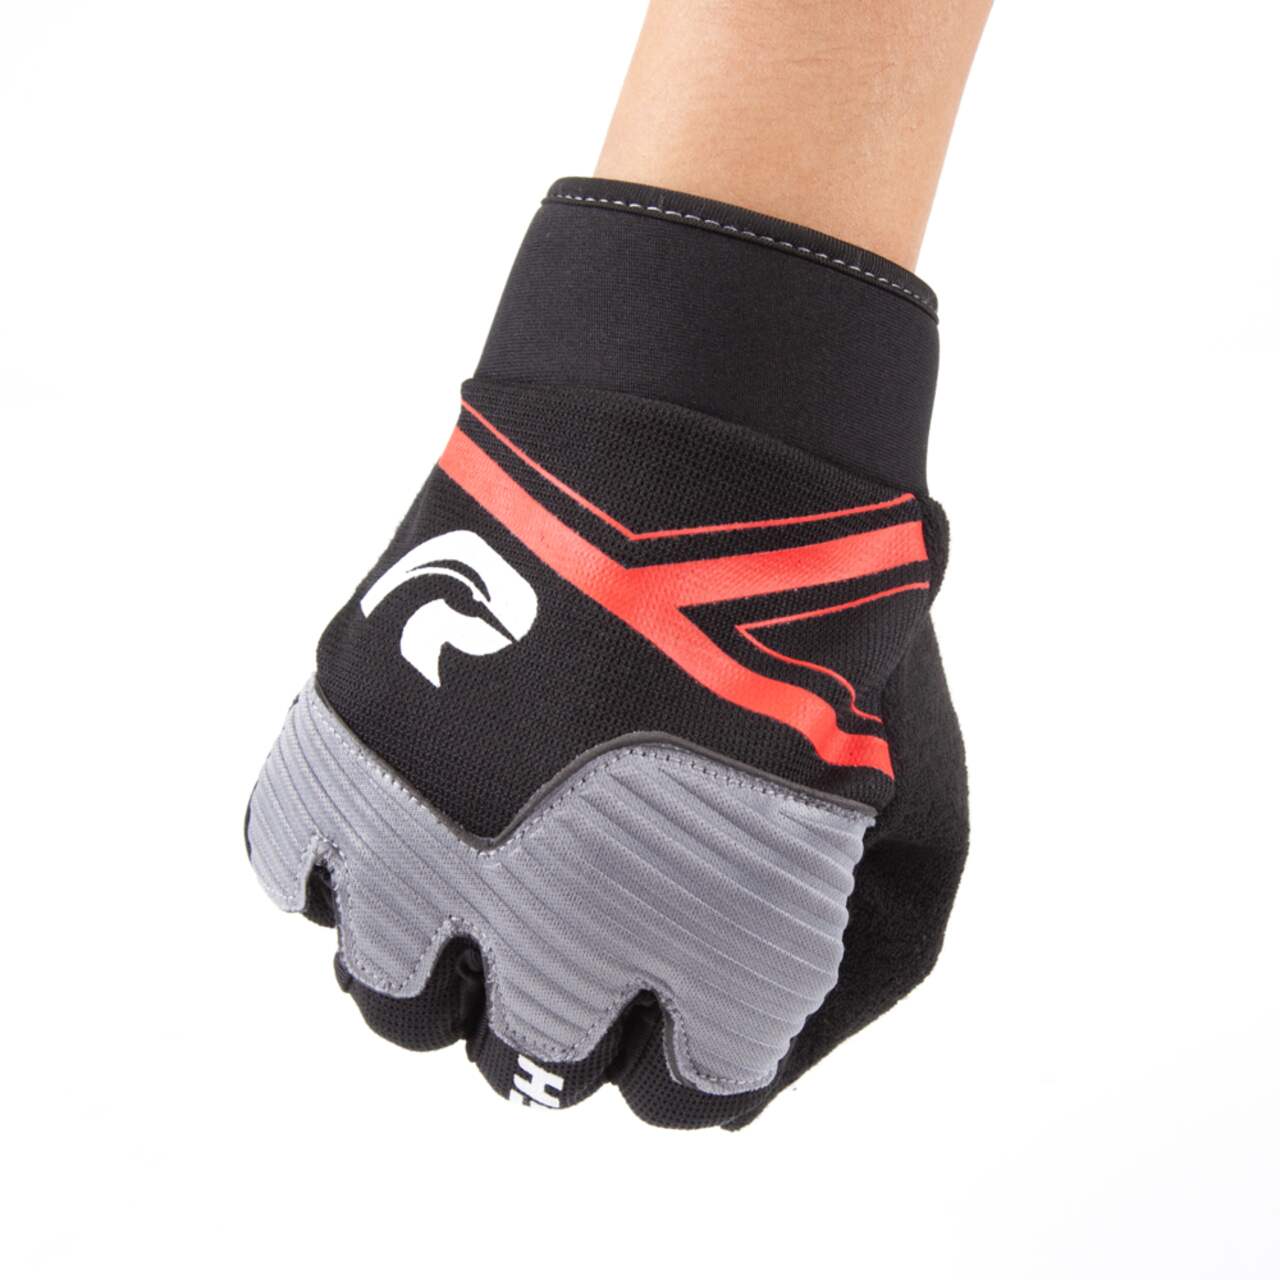 Raleigh Full Finger Foam Cyling/Bike Gloves w/Silicone Fingertip, Black